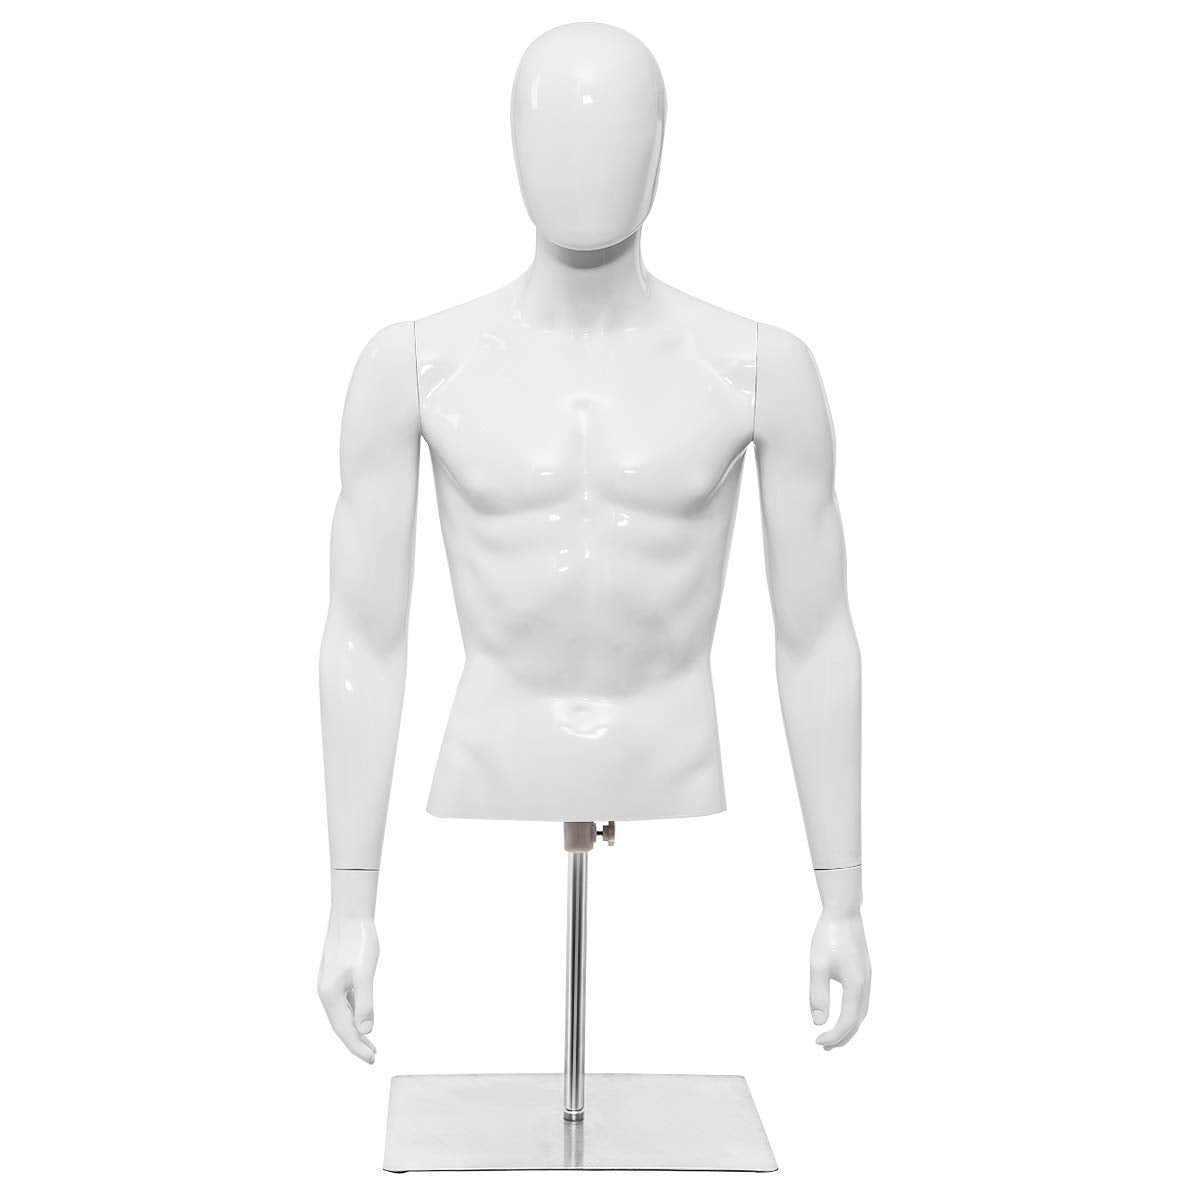 Giantex Male Mannequin Torso Adjustable Height